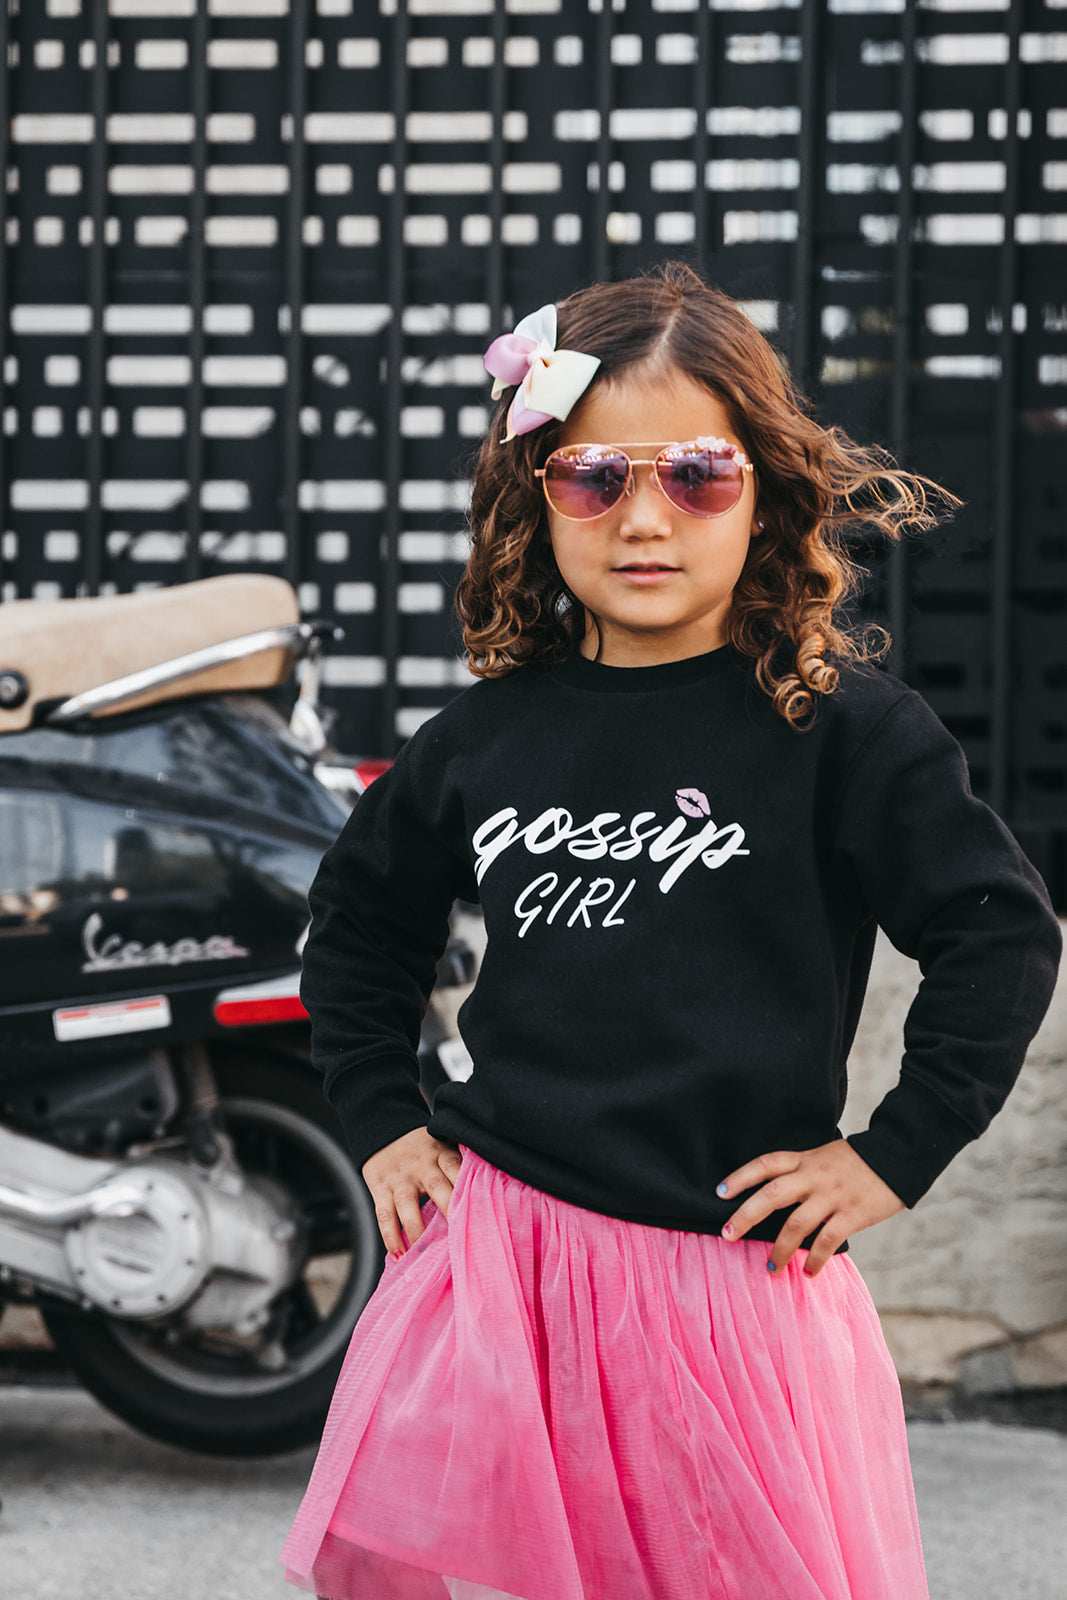 The "GOSSIP GIRL" Gossip Kids Crewneck Sweater